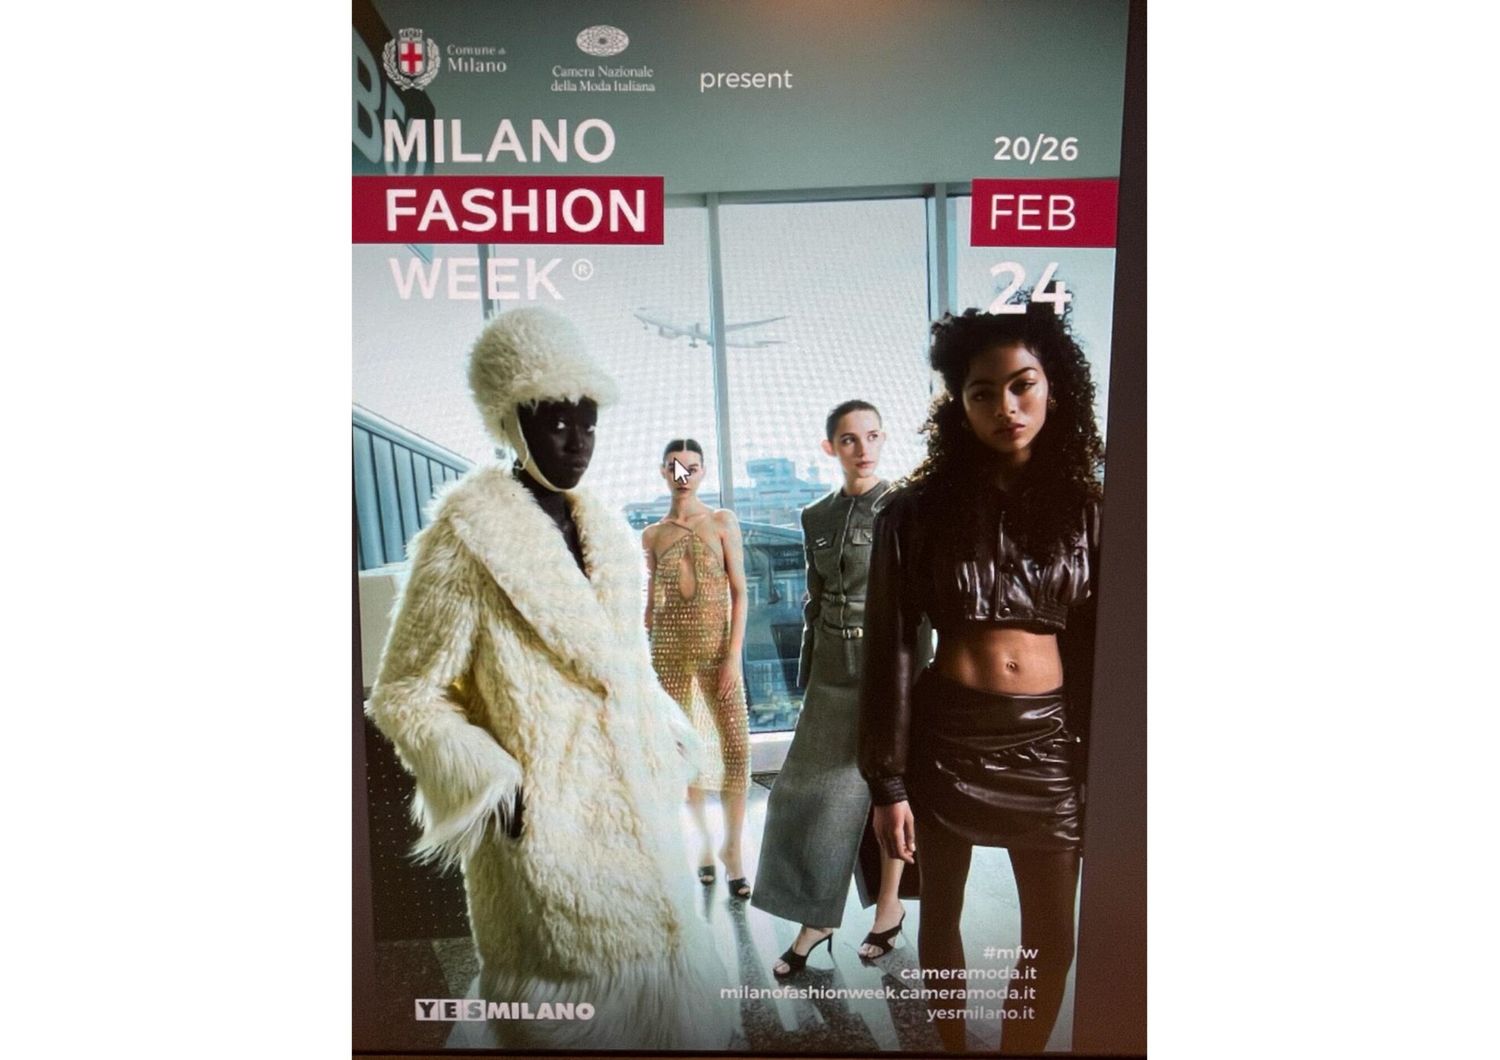 La settimana della moda, in arrivo a Milano, dal 20 al 27 febbraio